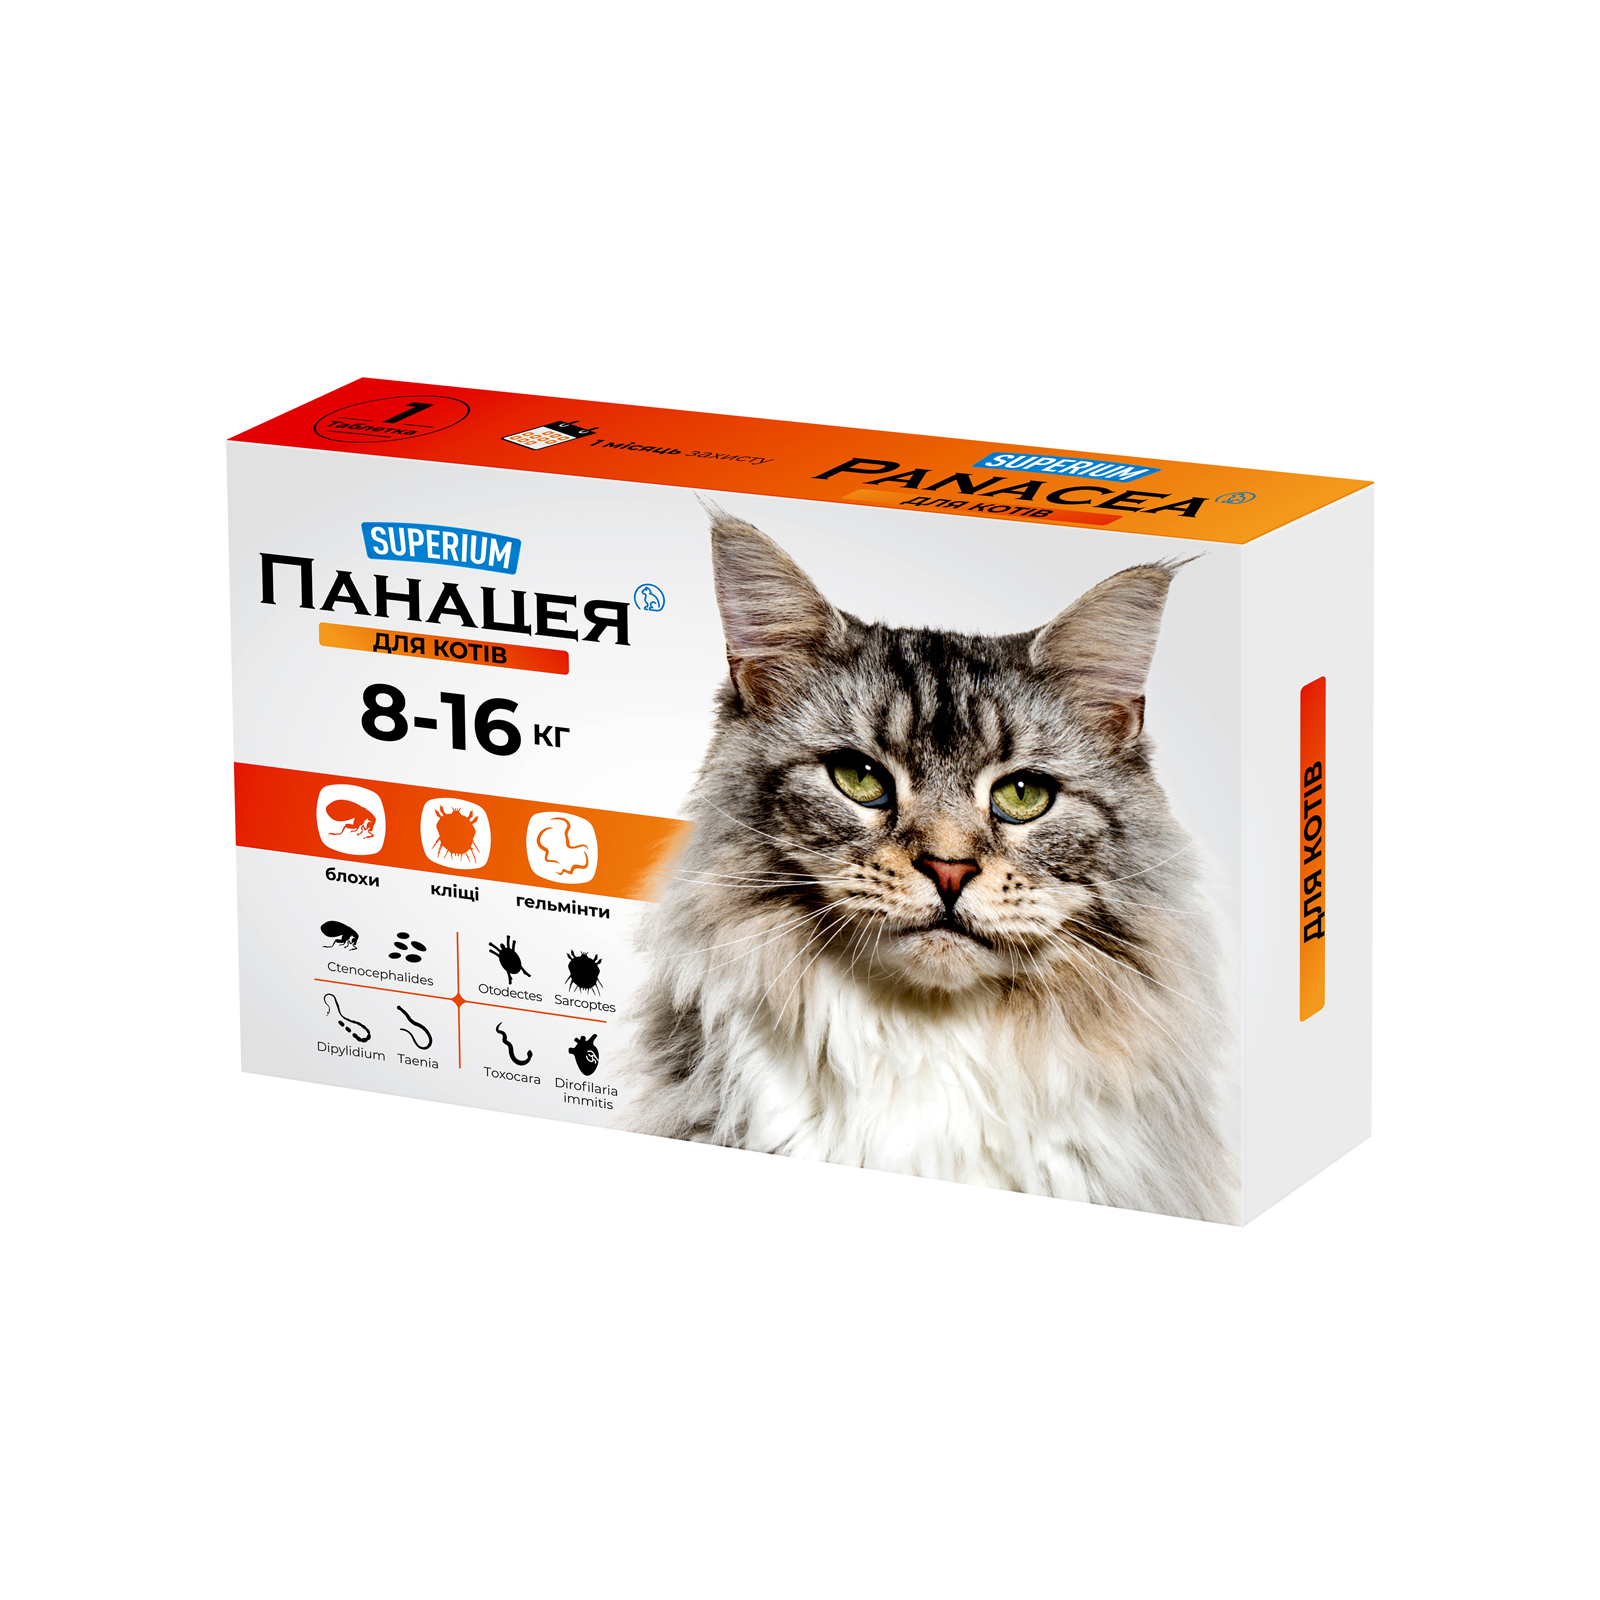 Таблетки для животных SUPERIUM Панацея для кошек 8-16 кг (4823089348742)